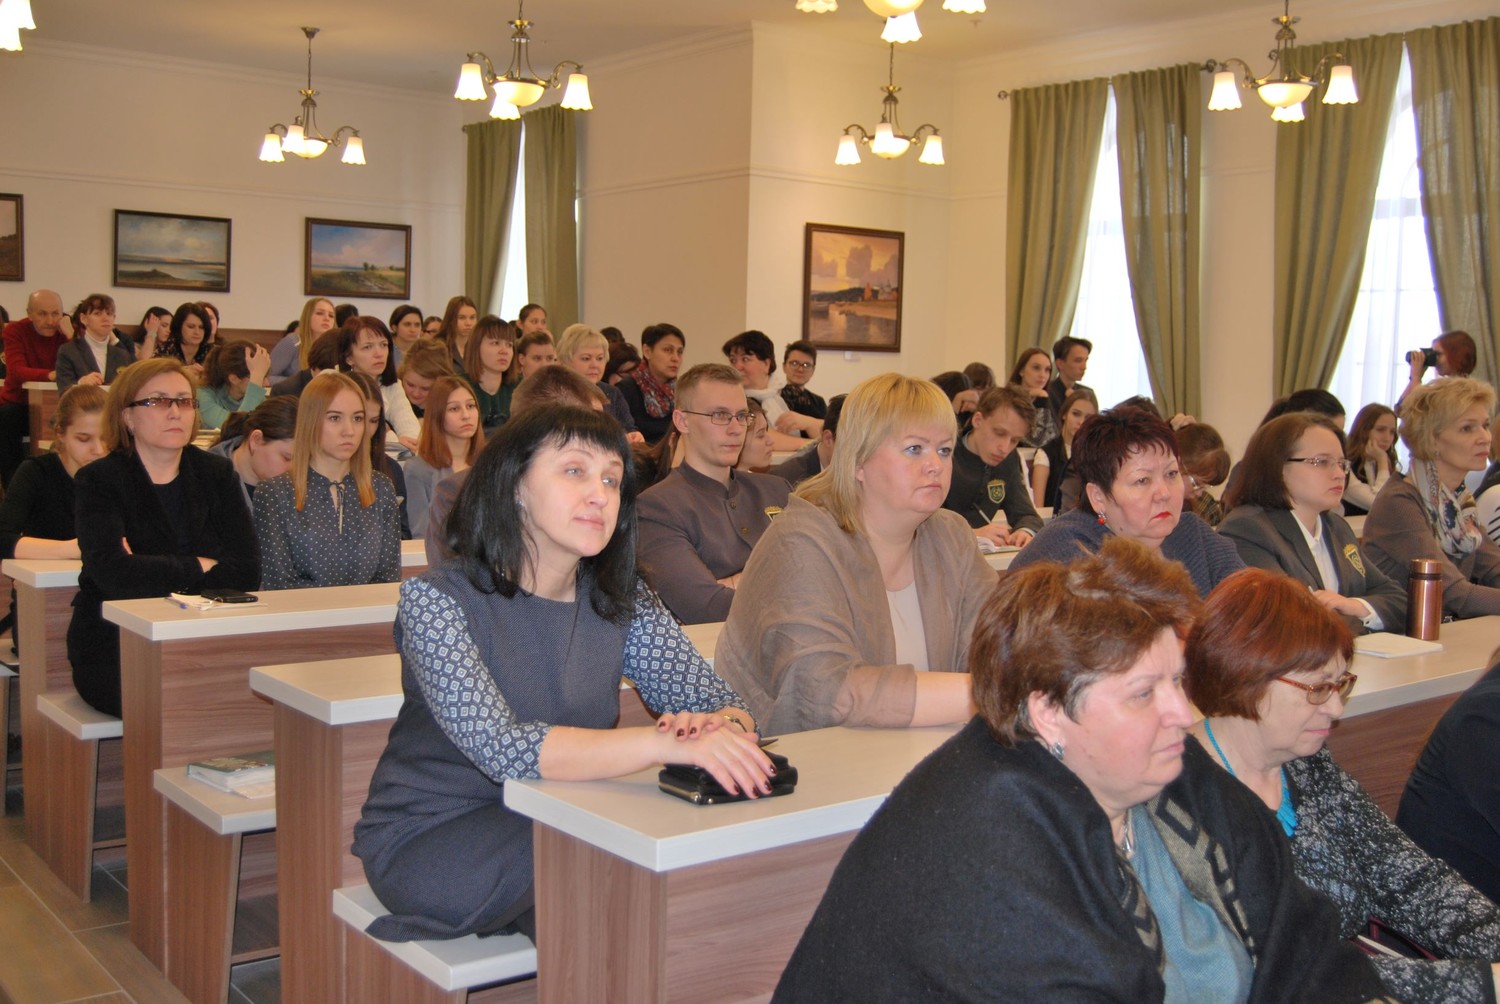 Гуманитарный колледж Тольятти